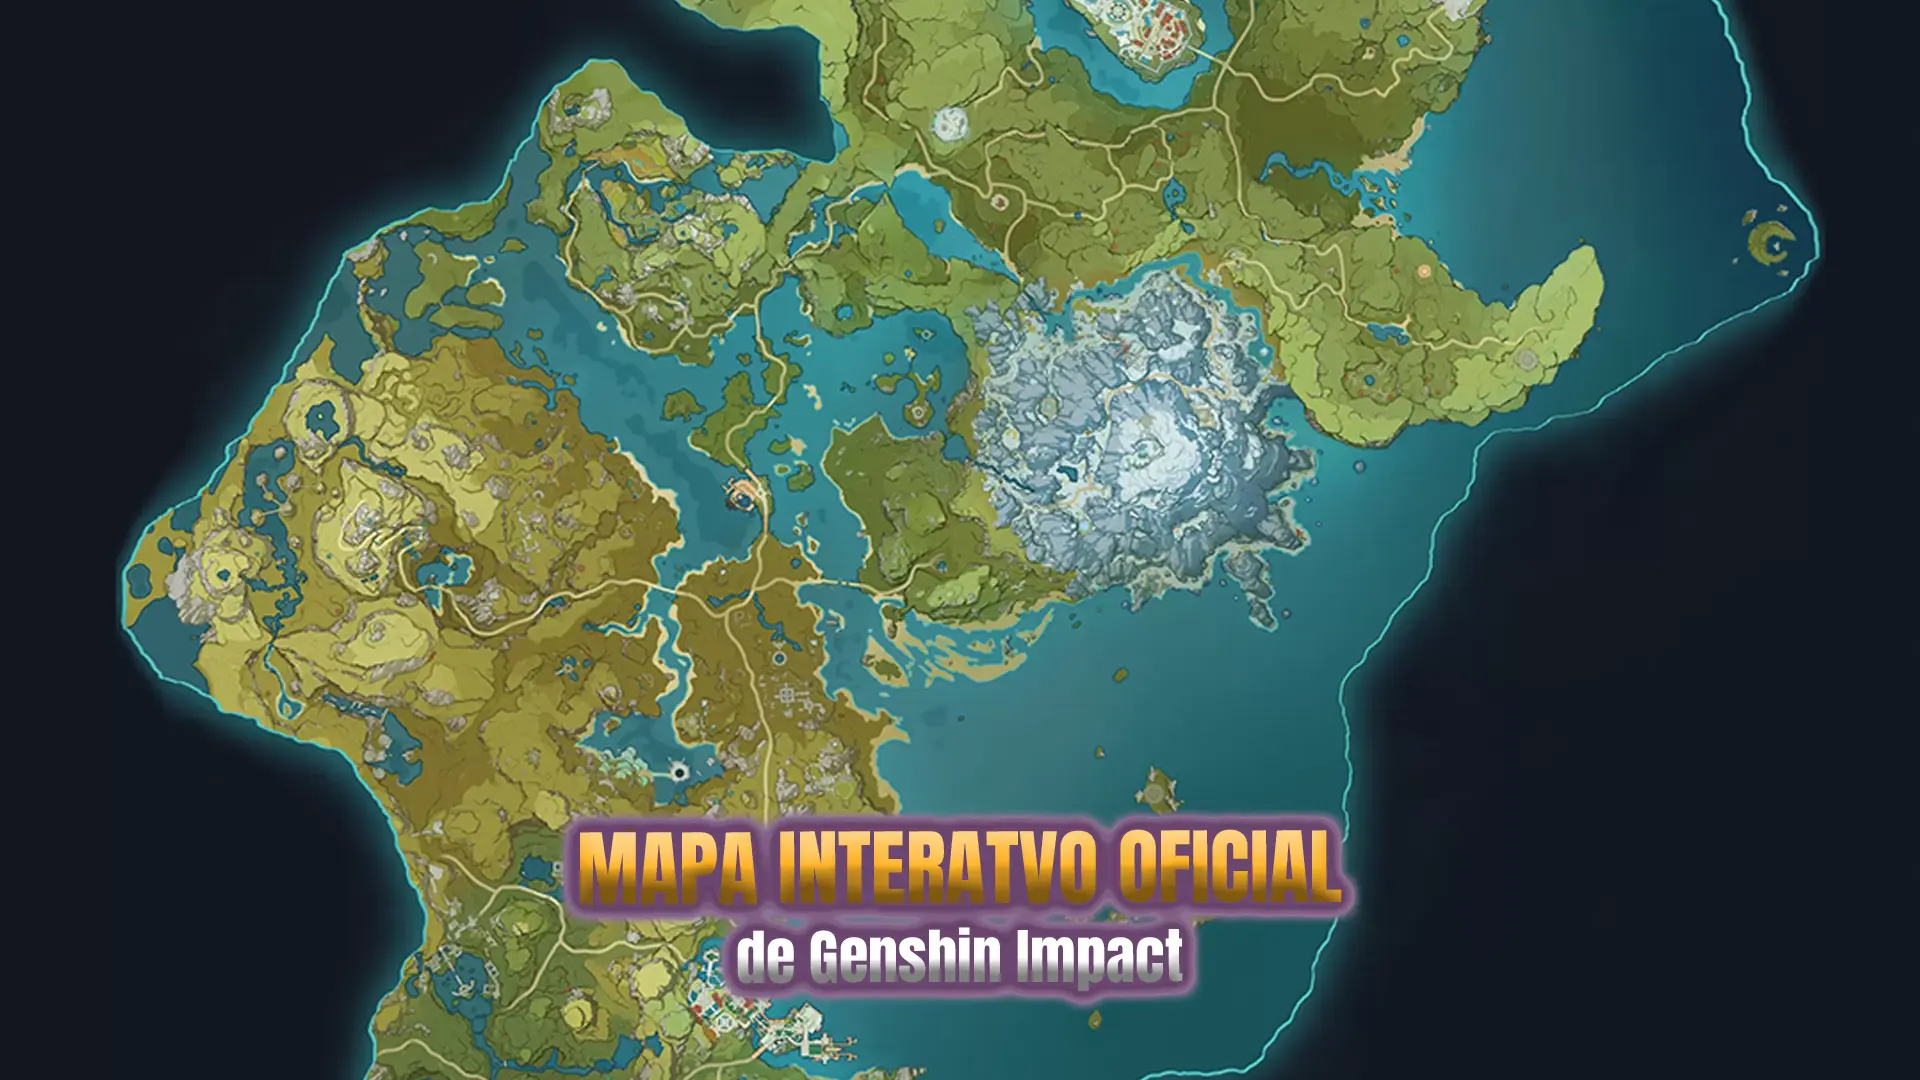 Códigos Genshin Impact hoje, 26 de novembro: códigos de resgate